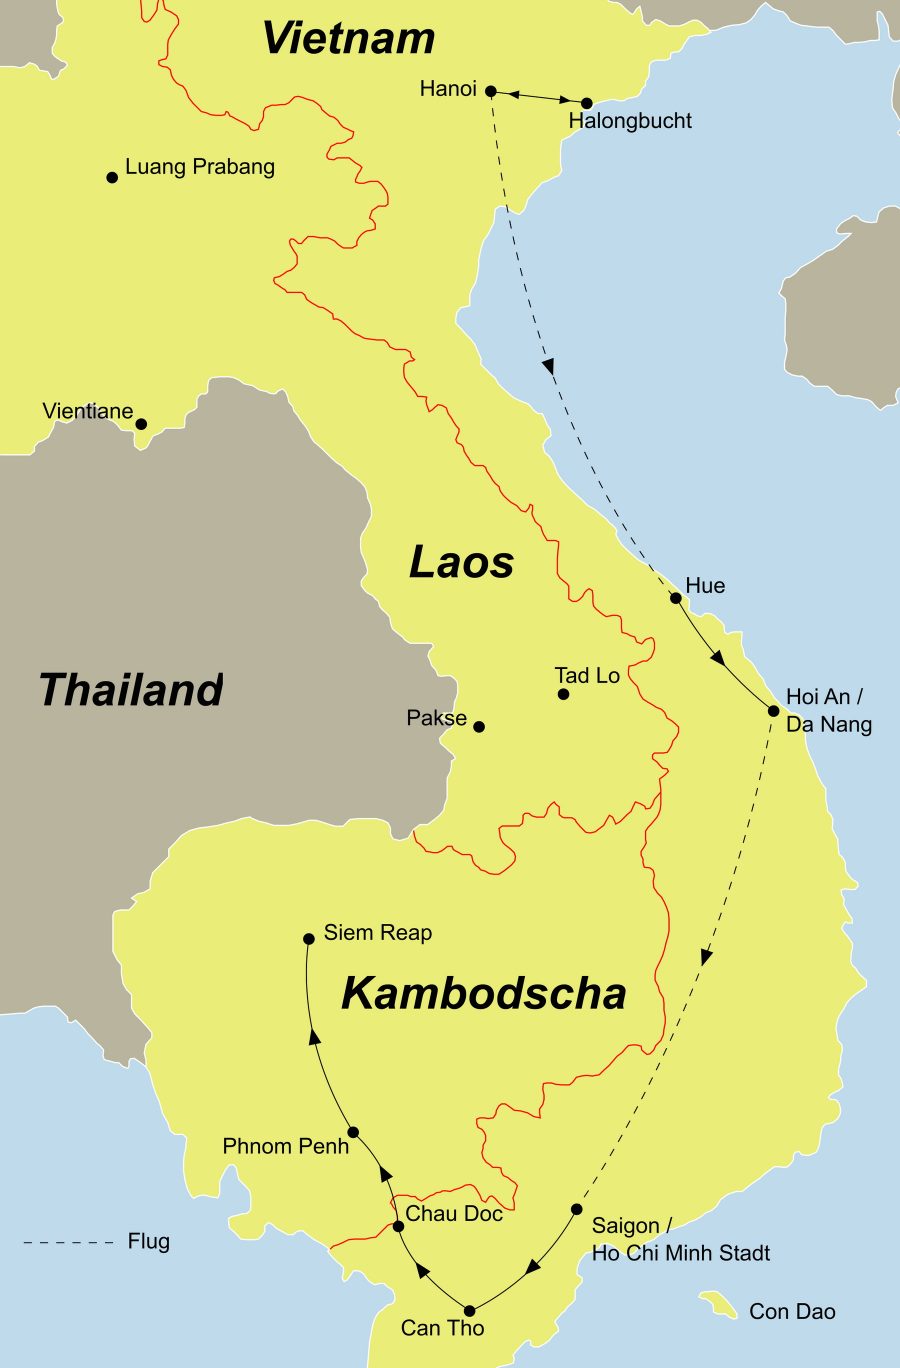 Die Reise Indochina erleben führt Sie von Hanoi über die Halong Bucht nach Hoi An, weiter geht es nach Saigon und weiter nach Kambodscha.